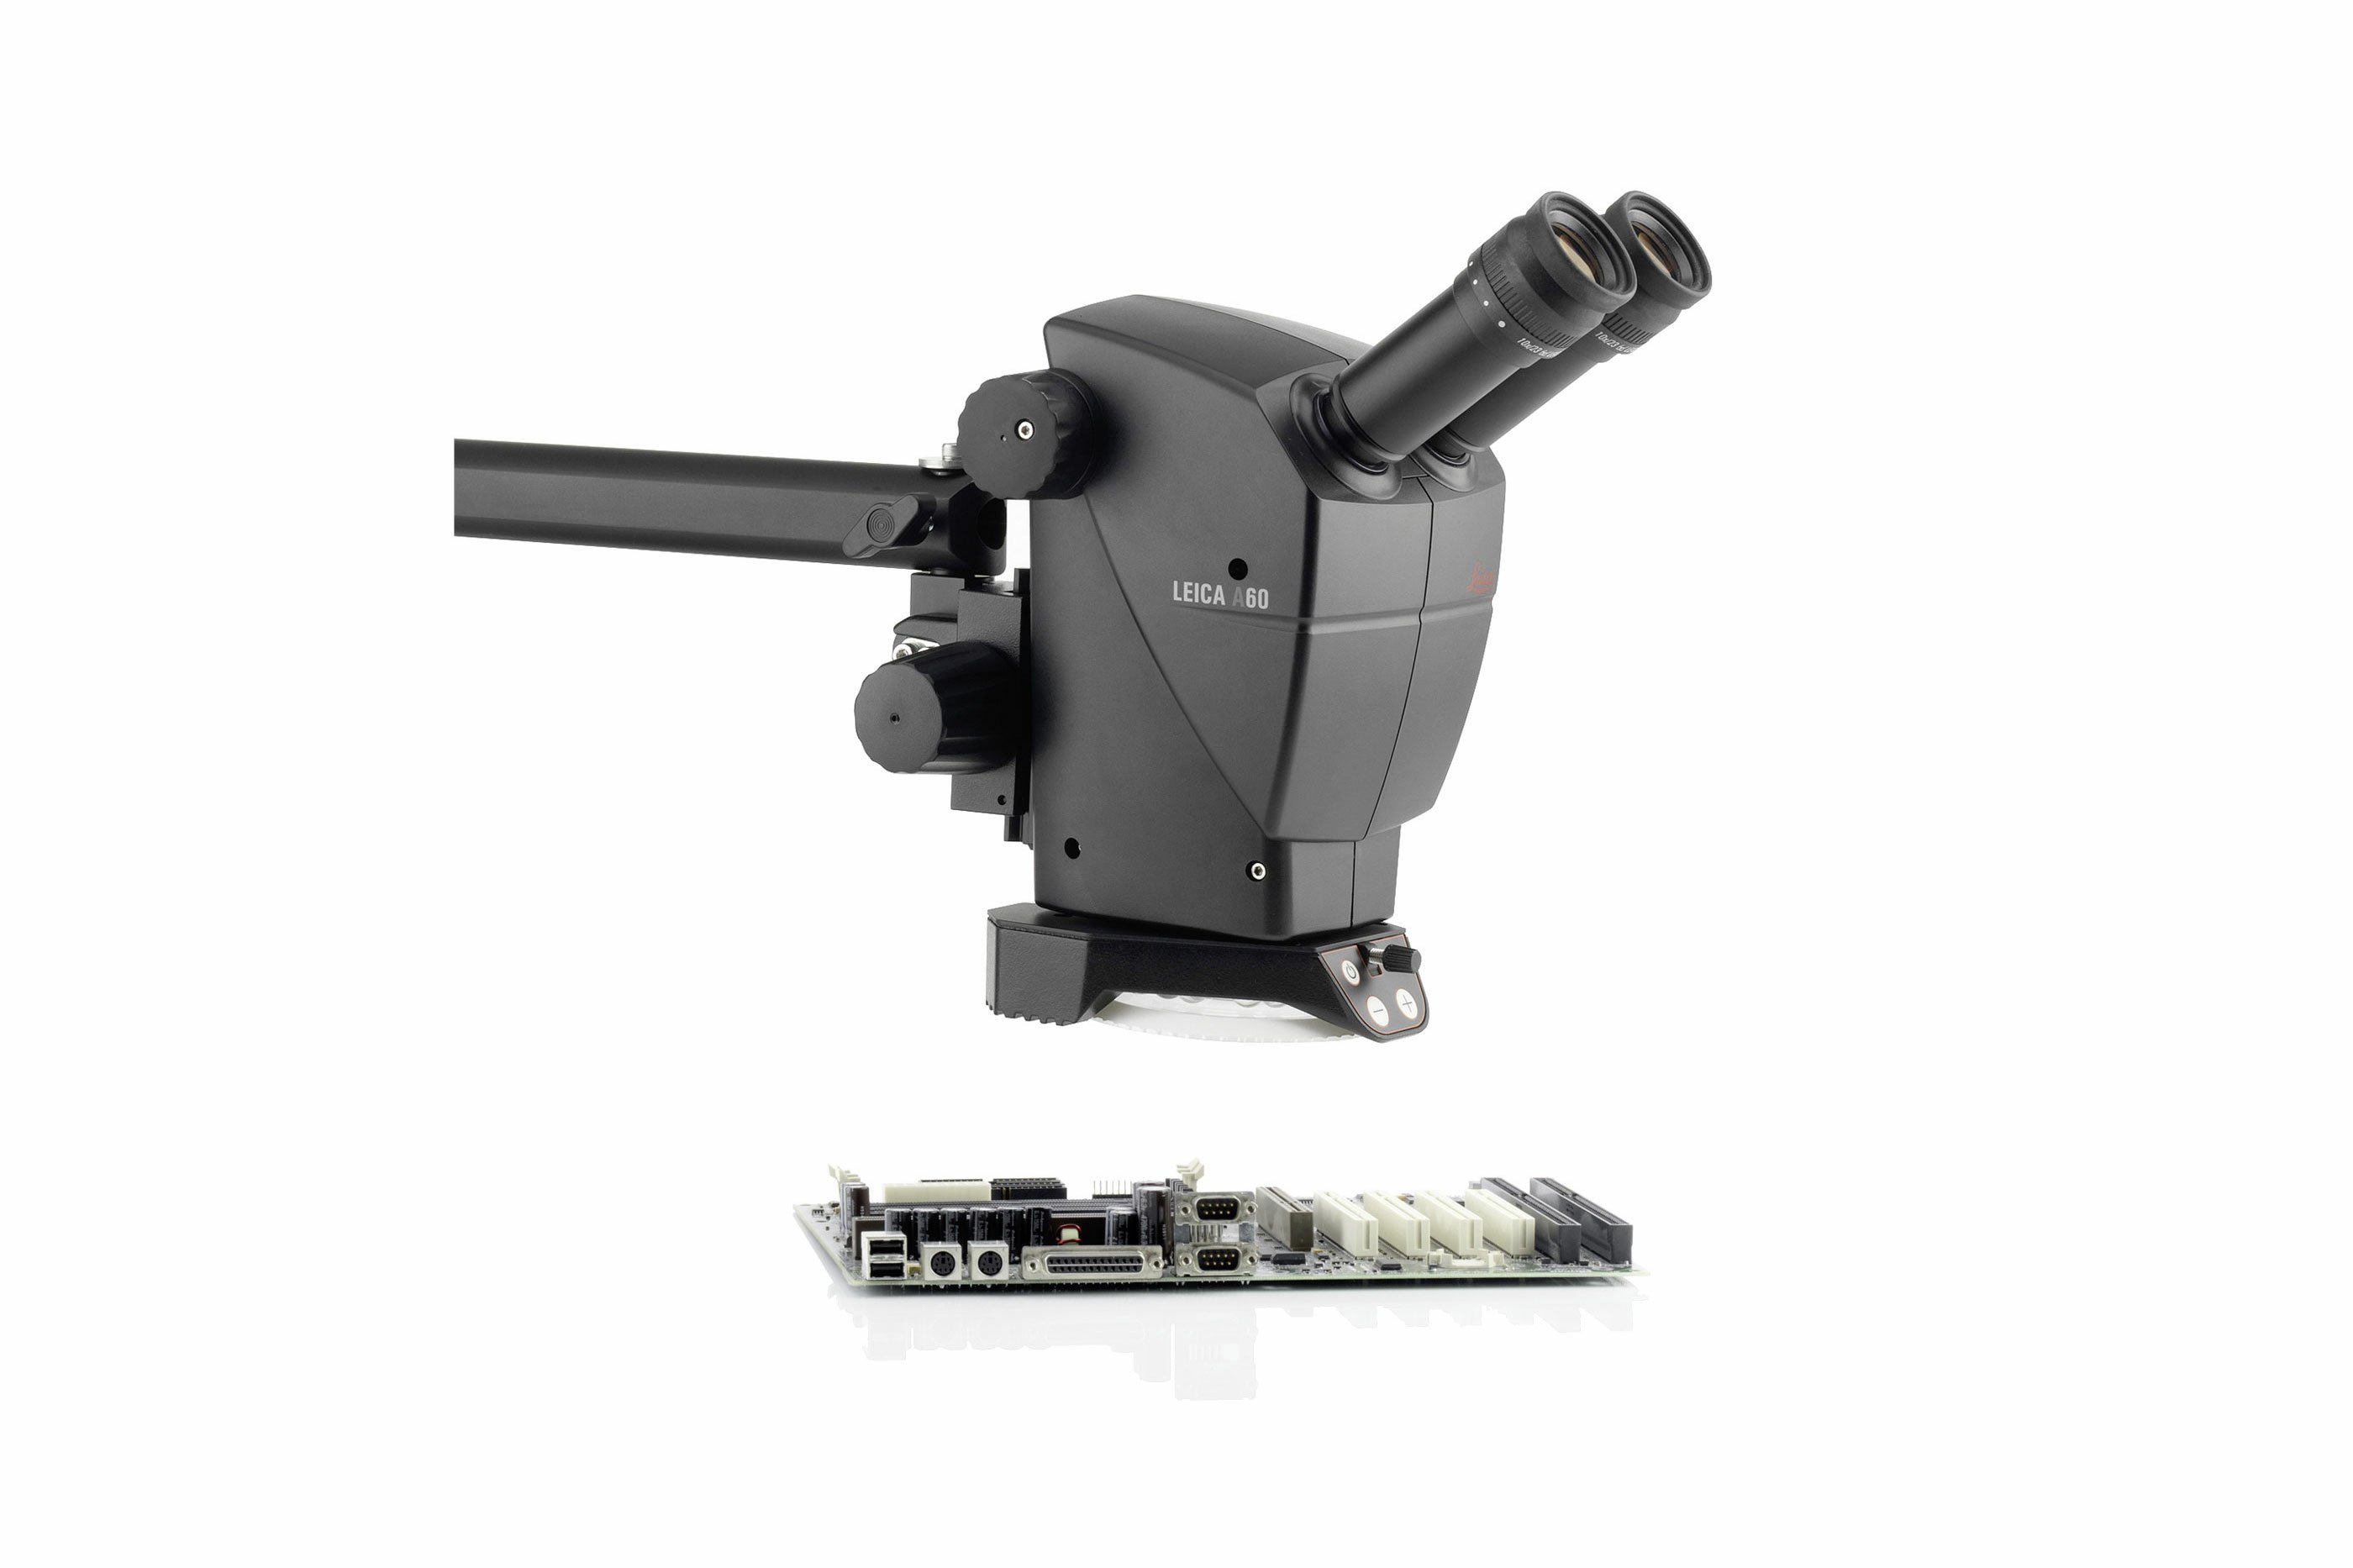 Stéréomicroscope industriel Leica A60. Les distributeurs australiens sont IDM Instruments